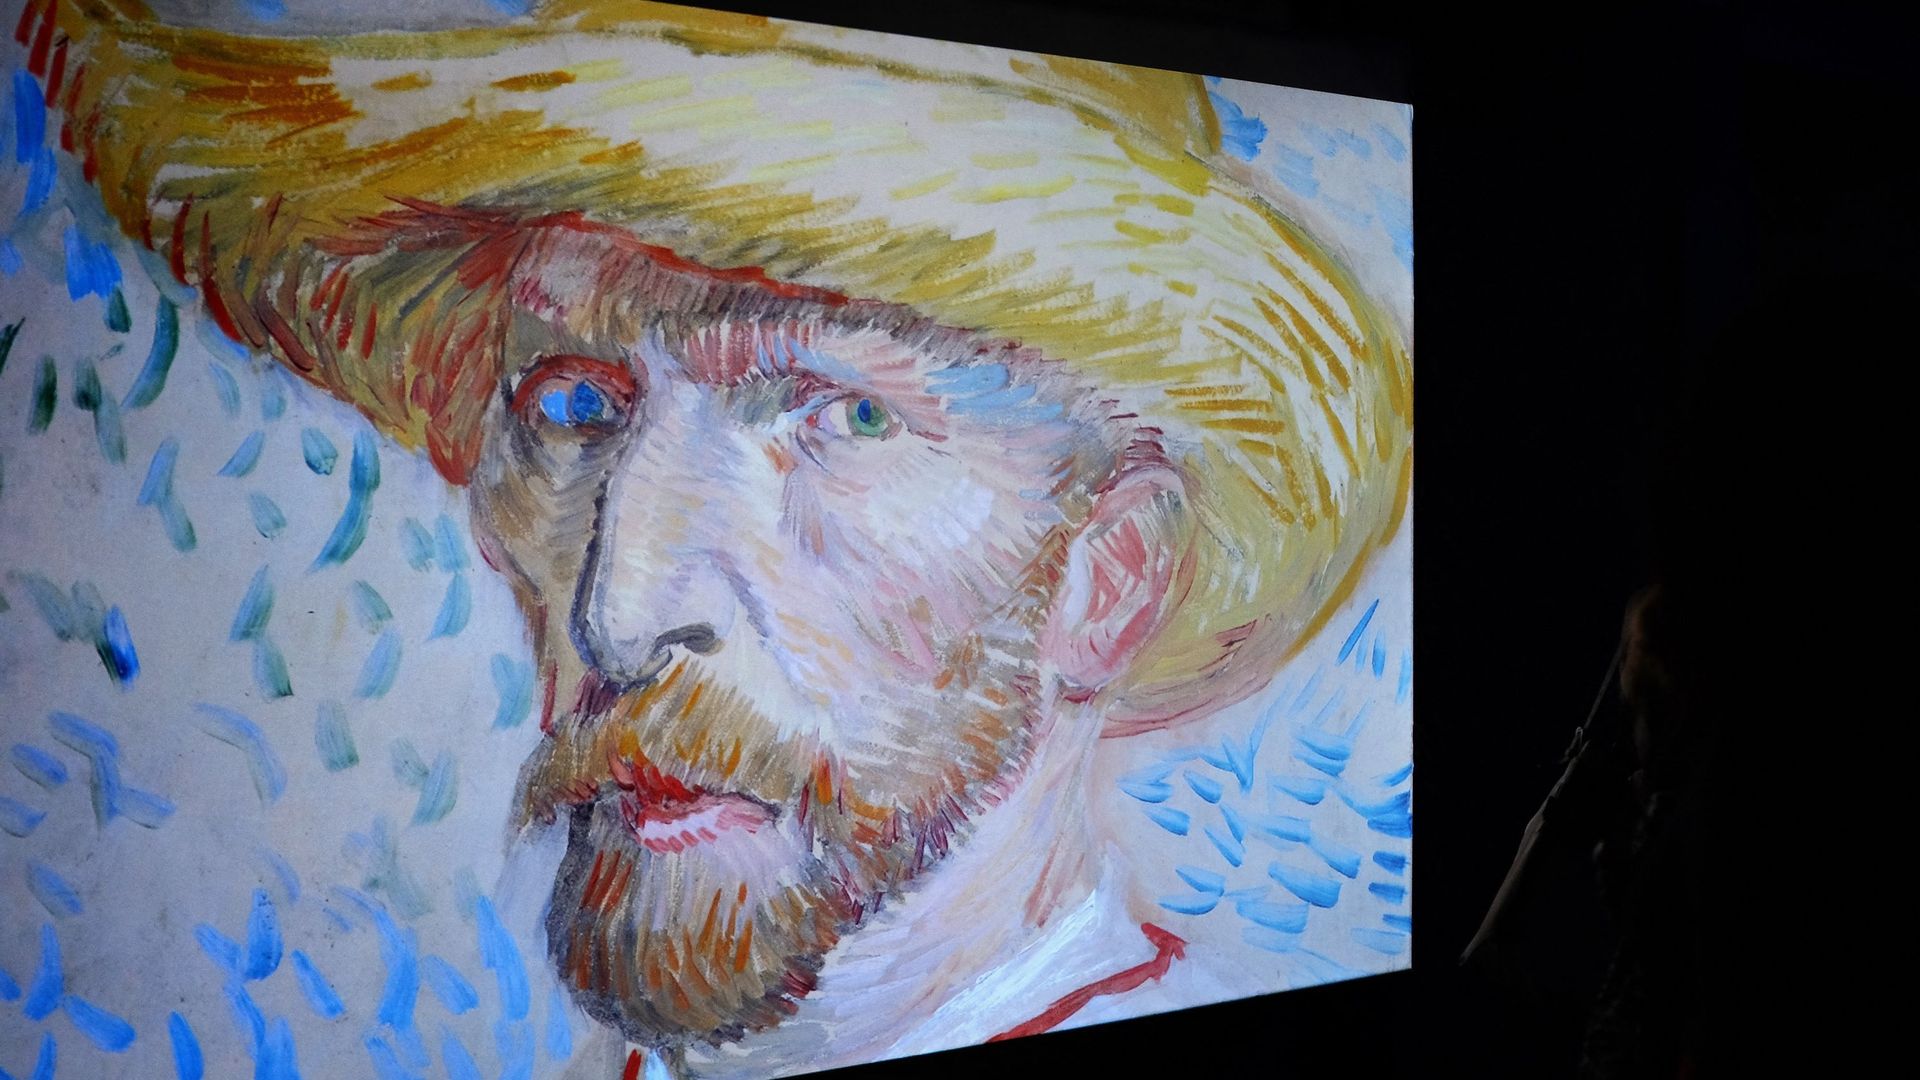 Le musée Van Gogh retire des cartes Pokemon inspirées du peintre, objets de  frénésie incontrôlée